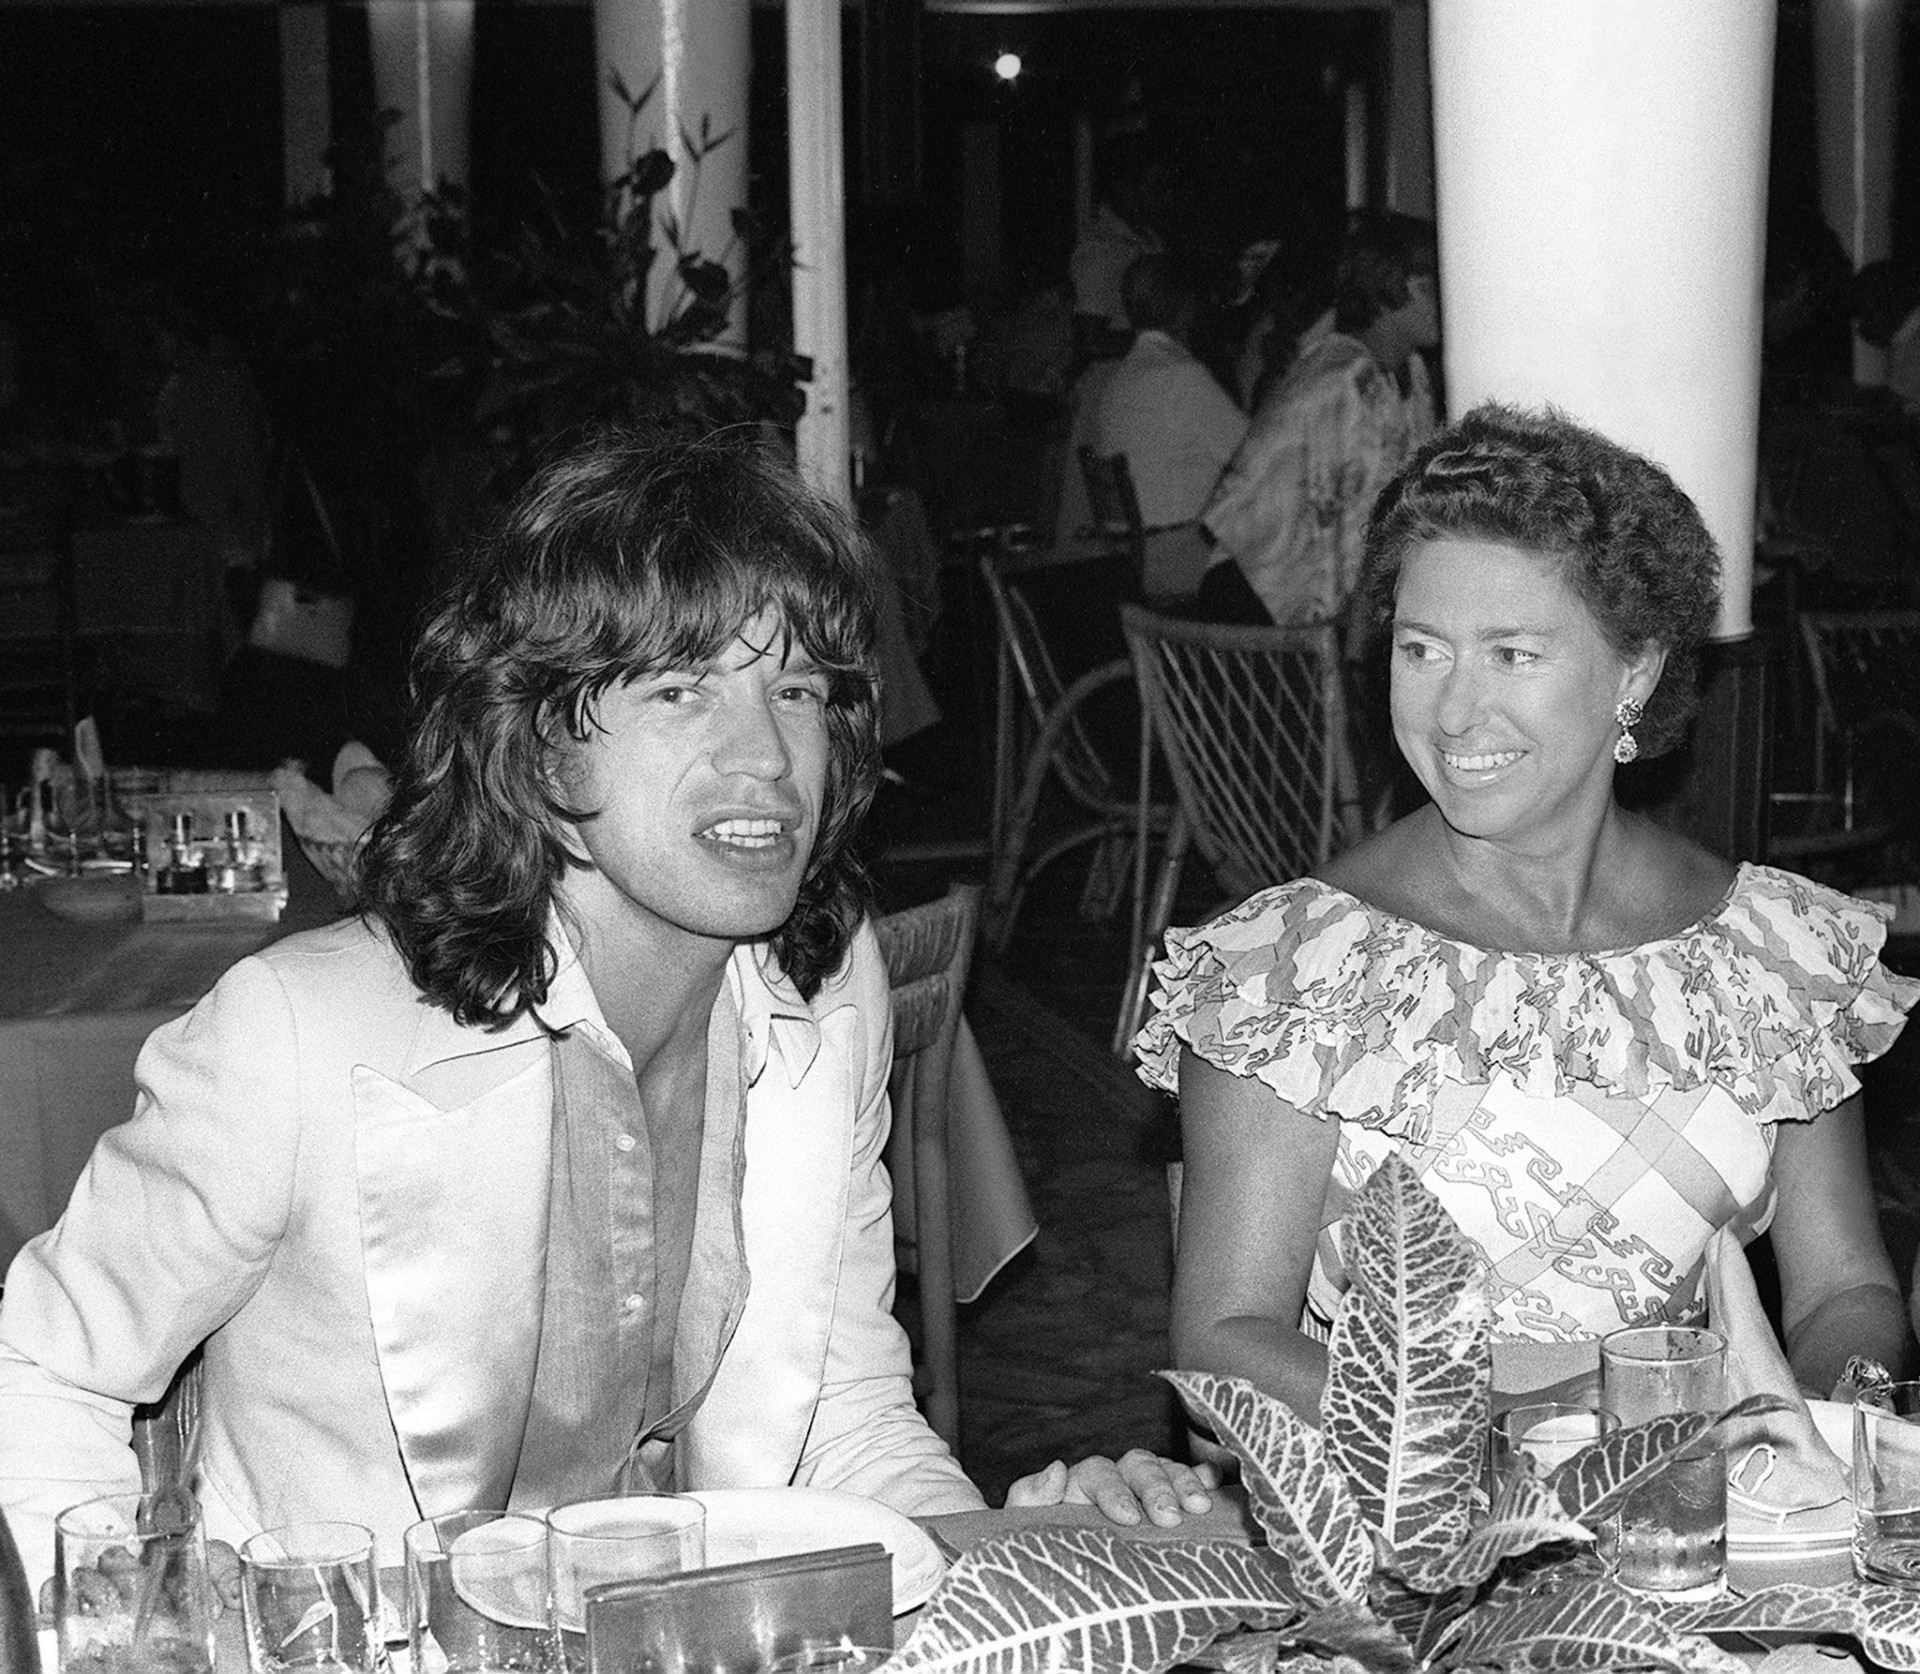 <p>La princesa acabó casándose con el fotógrafo Antony Armstrong-Jones en 1960. ¿Pero alguna vez le fue infiel? ¡La polémica está servida! Margarita y Mick Jagger, el vocalista de los Rolling Stones, eran amigos cercanos y se cree que tuvieron algo, pero solo es un rumor.</p>